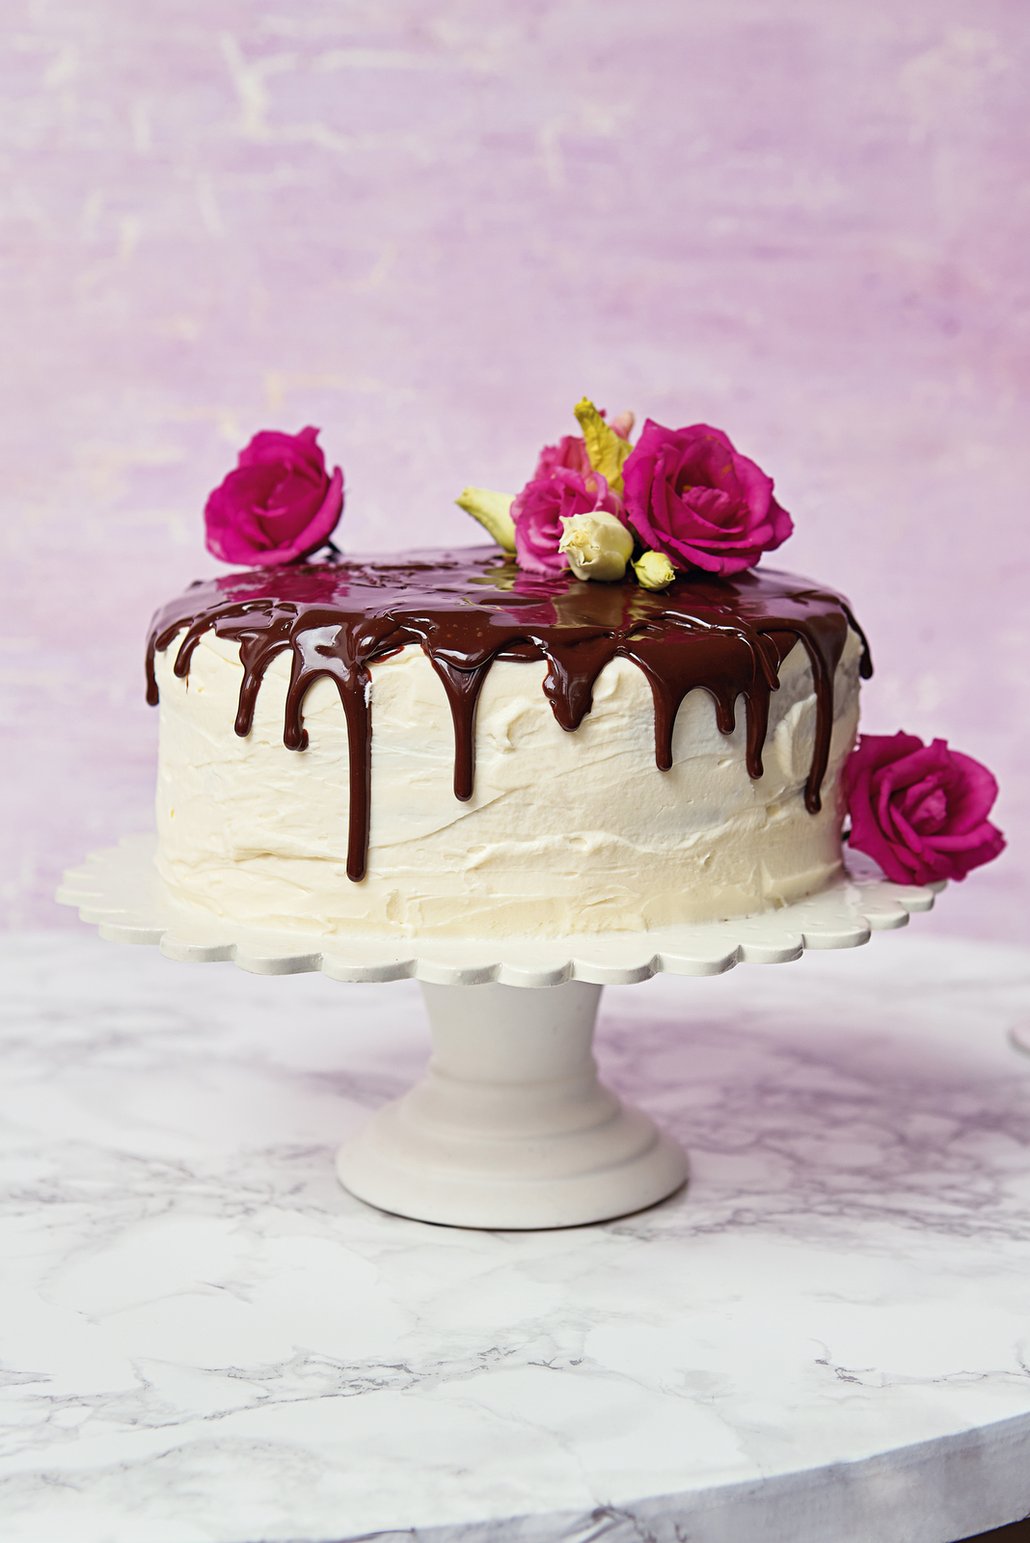 Sladký korpus mramorového dortu s čokoládovou polevou pak perfektně osvěží krém z mascarpone a krémového sýra